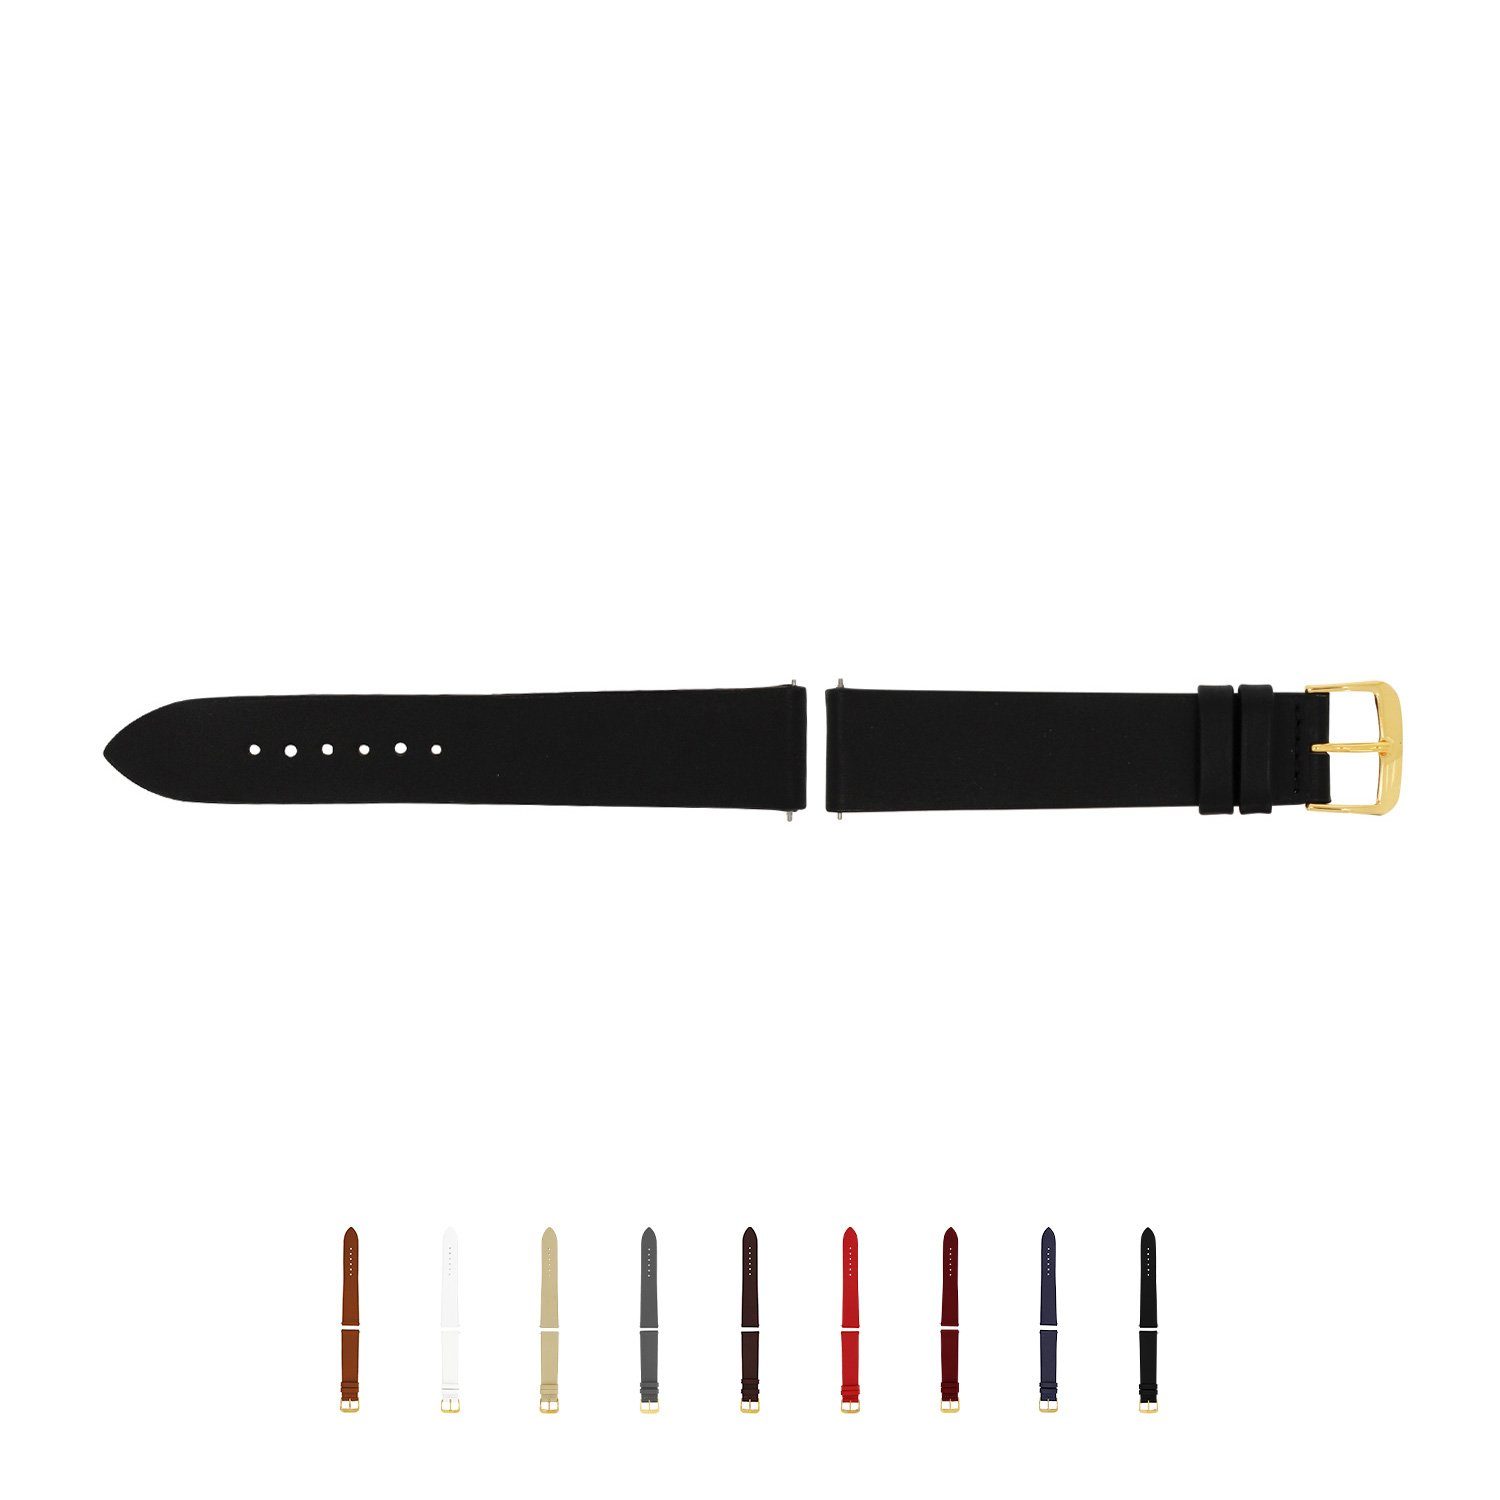 Selva Technik Wechselarmband gelb schwarz ohne Naht, ohne Release, made Wechseln, Germany Naht, Quick in einfachen Uhrenarmband, 22mm zum